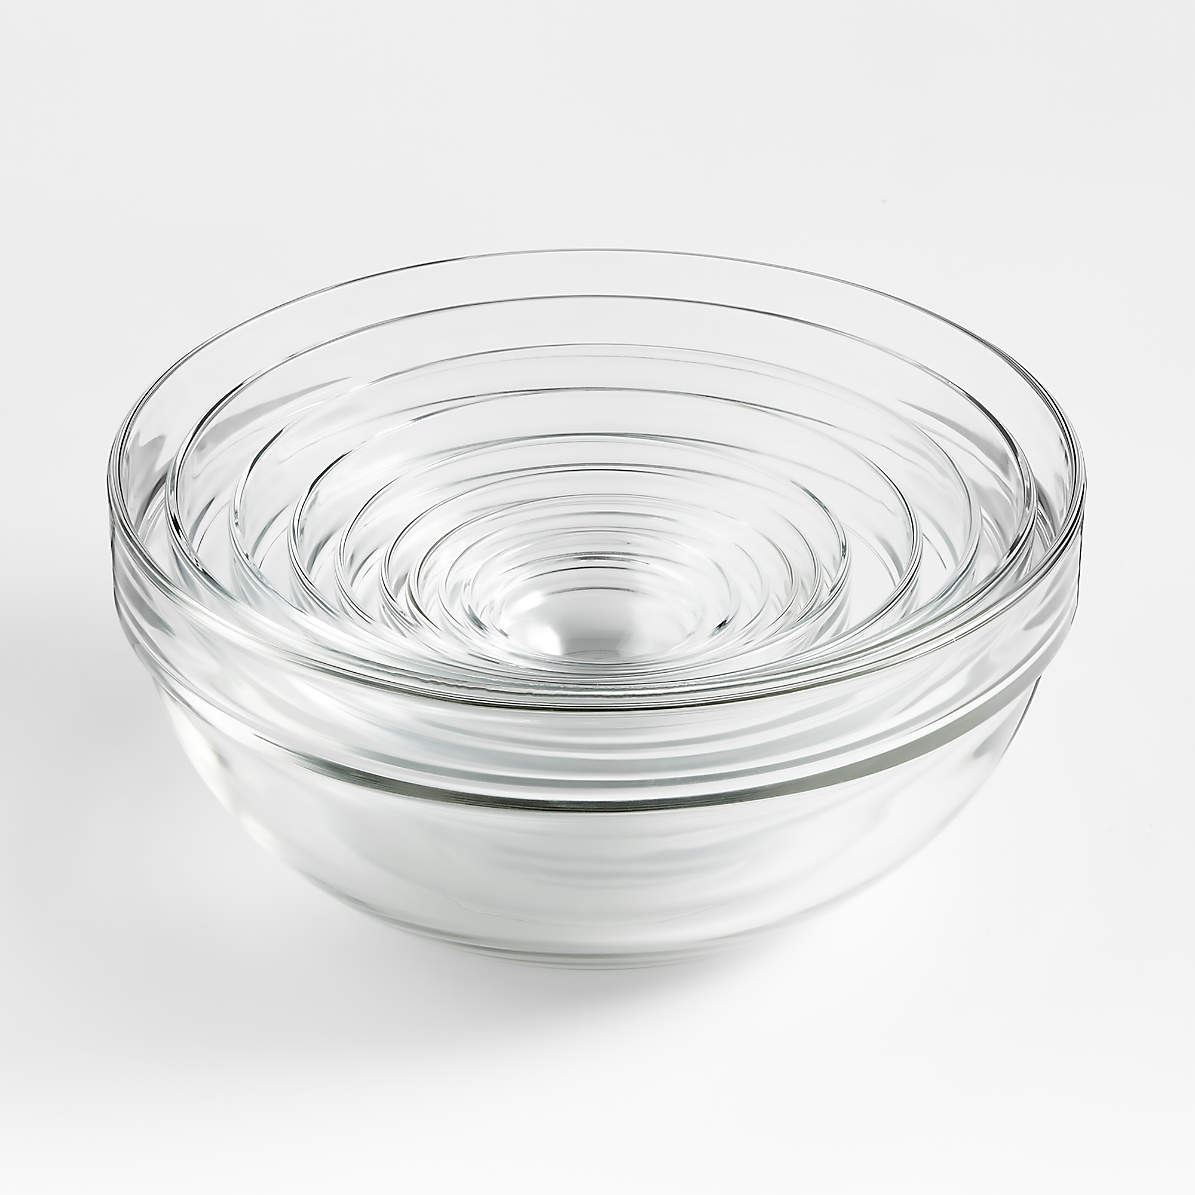 Glass Nesting Bowl 10-Piece Set + Reviews